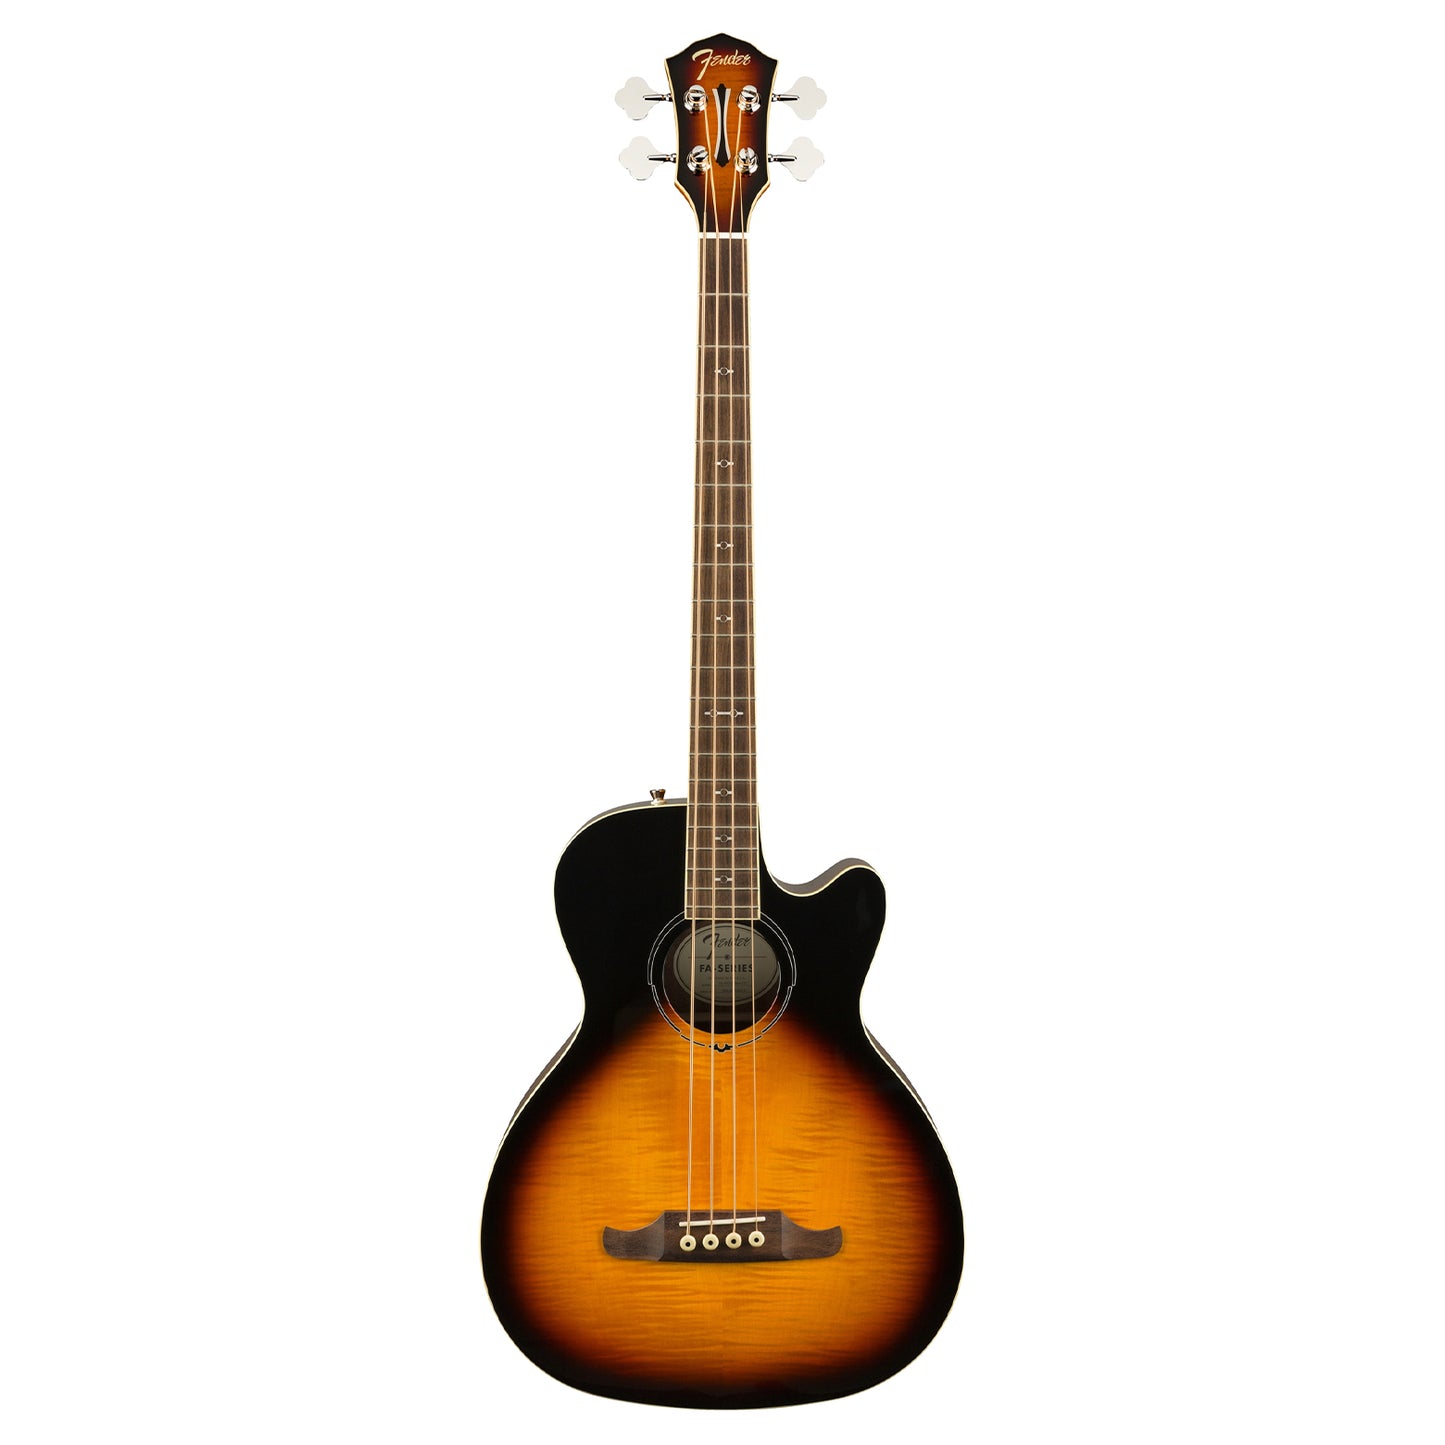 Fender FA-450CE Acoustic Bass Guitar with 20 Frets, Laurel Fingerboard, Volume Treble Controls (3 Color Sunburst)